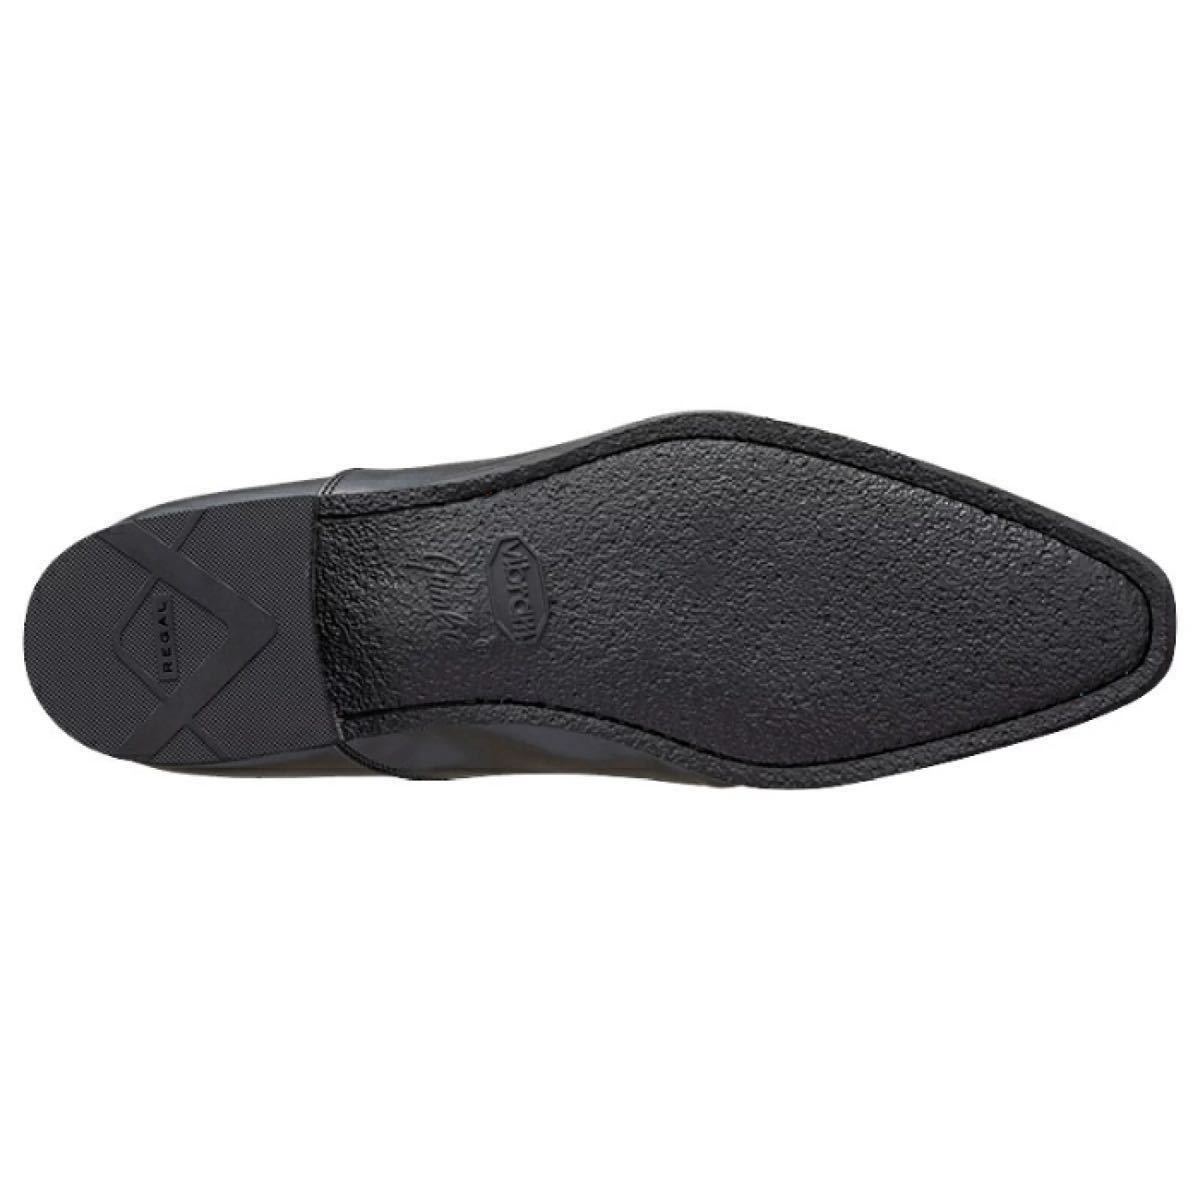 [ бесплатная доставка ] Reagal (REGAL) бизнес обувь 21CL BE черный новый товар коробка есть 25.0cm